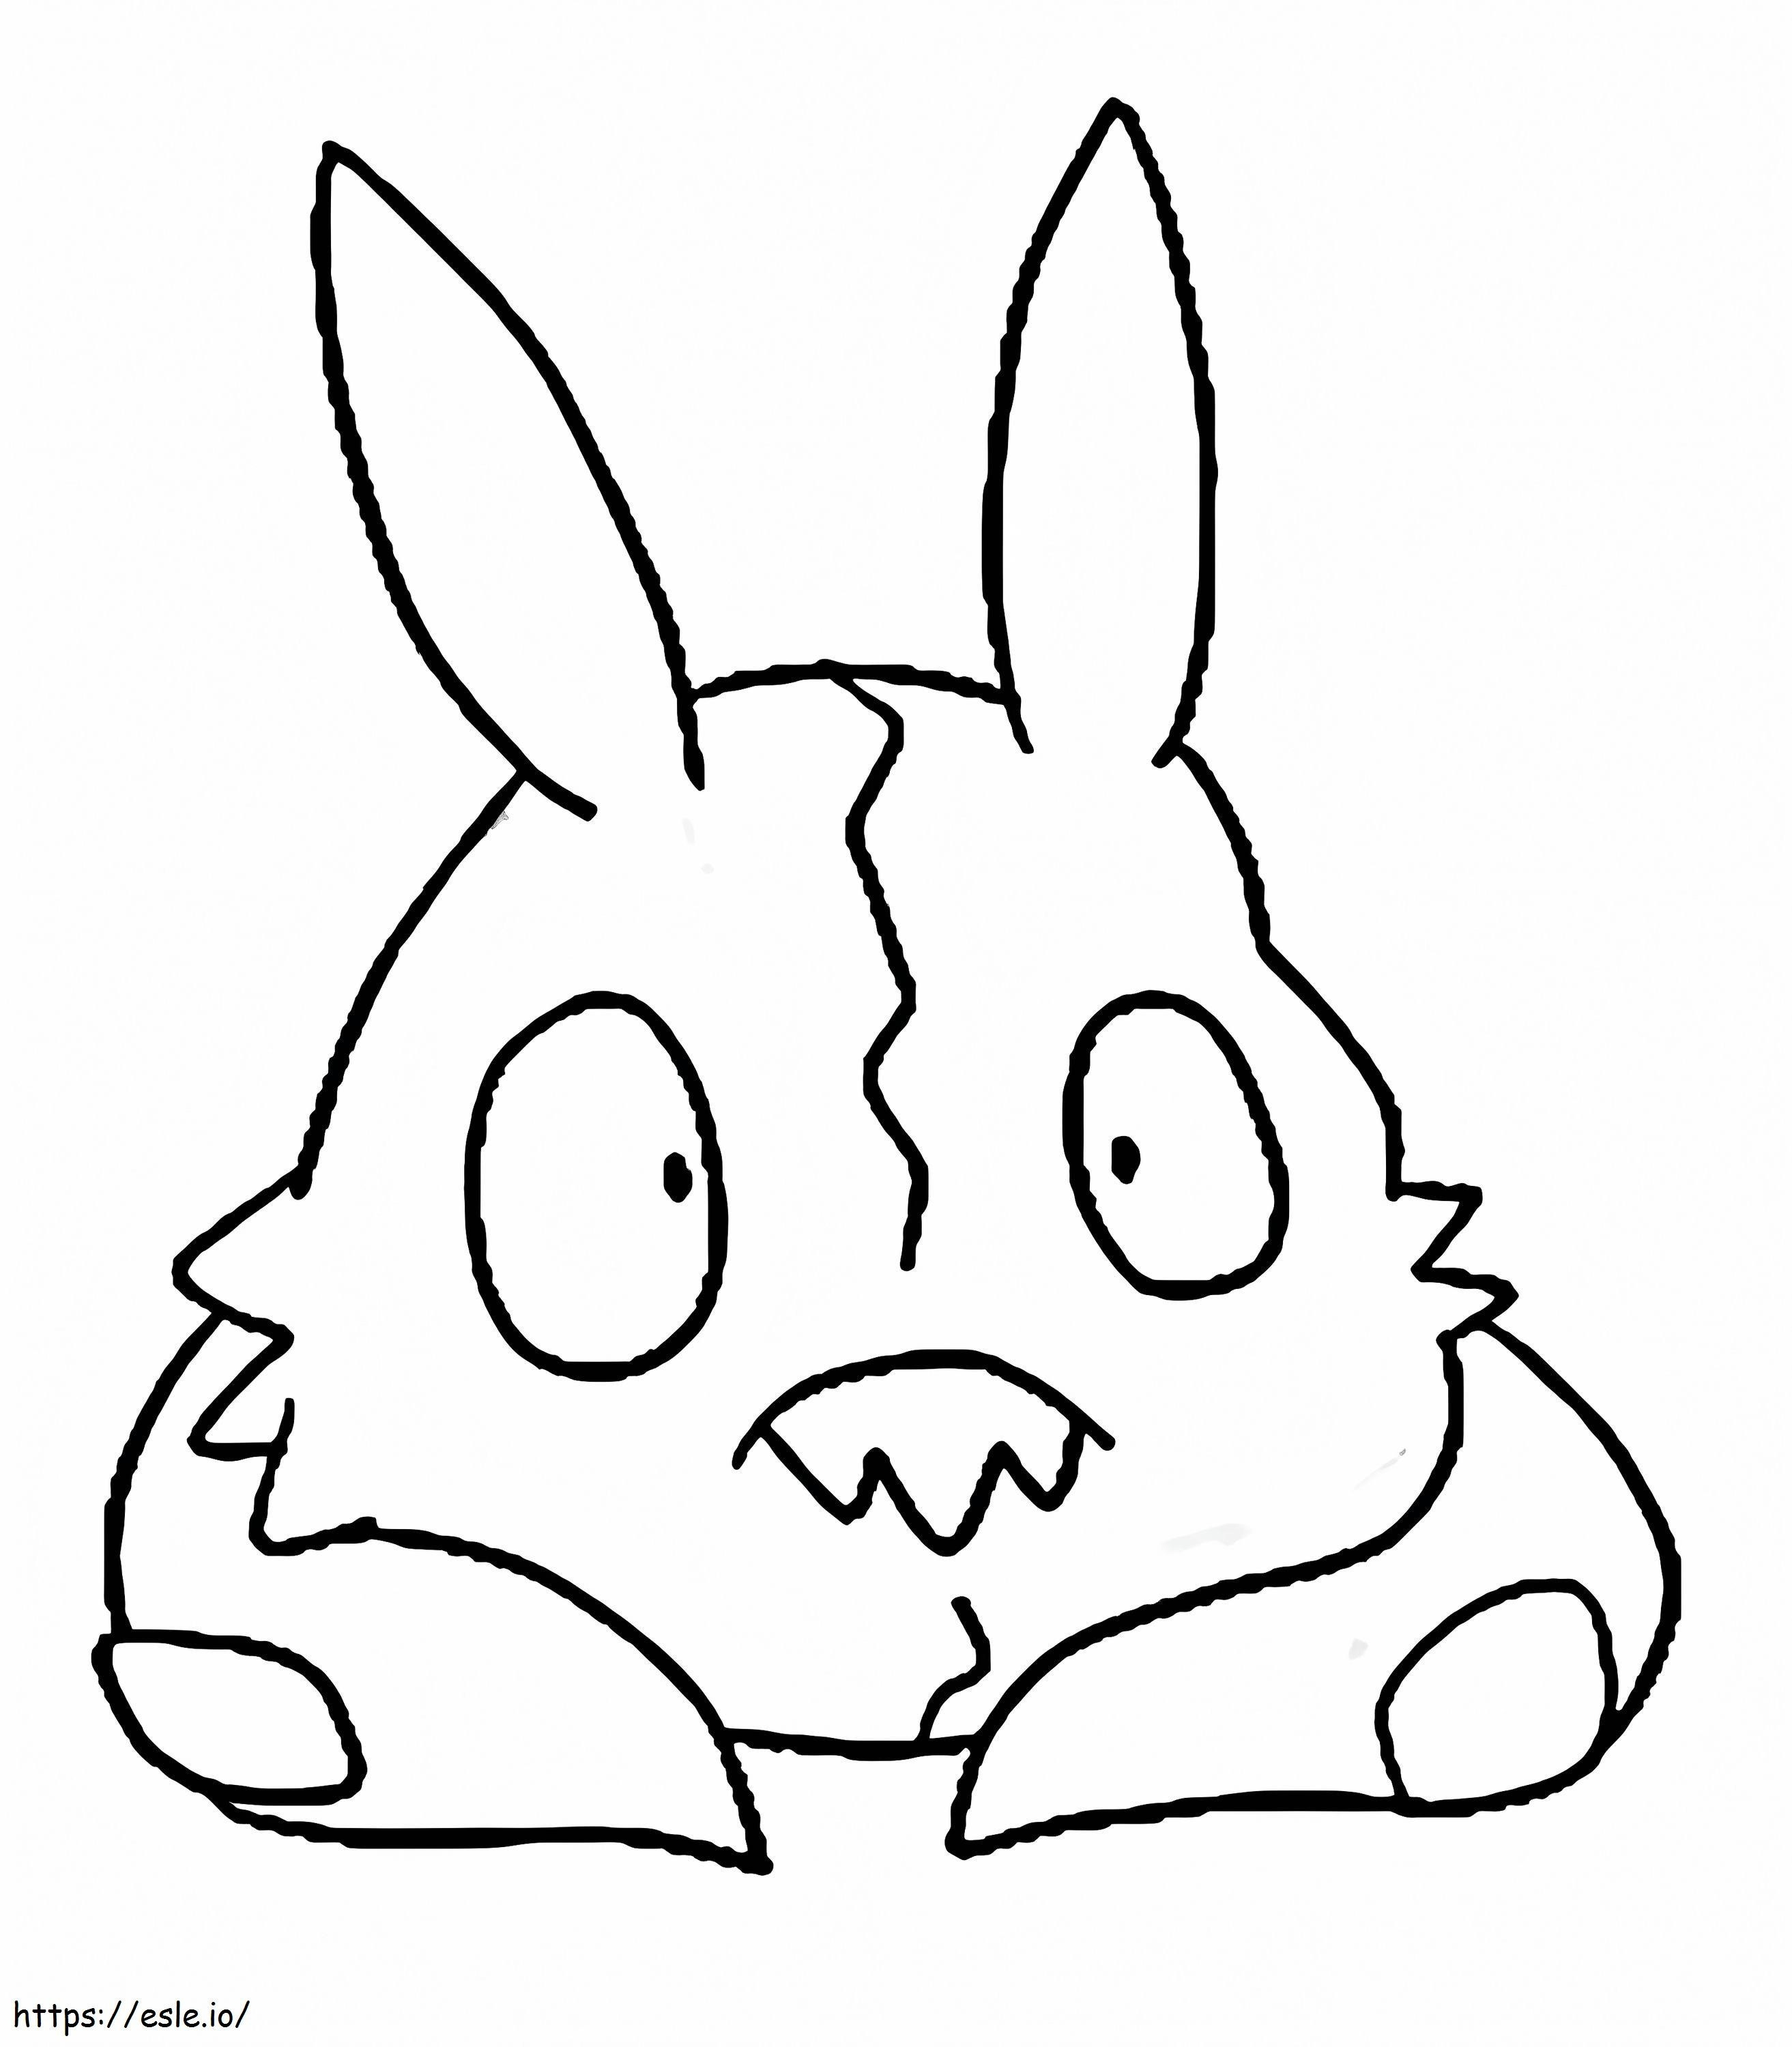 Coloriage Trubbish Pokémon 3 à imprimer dessin